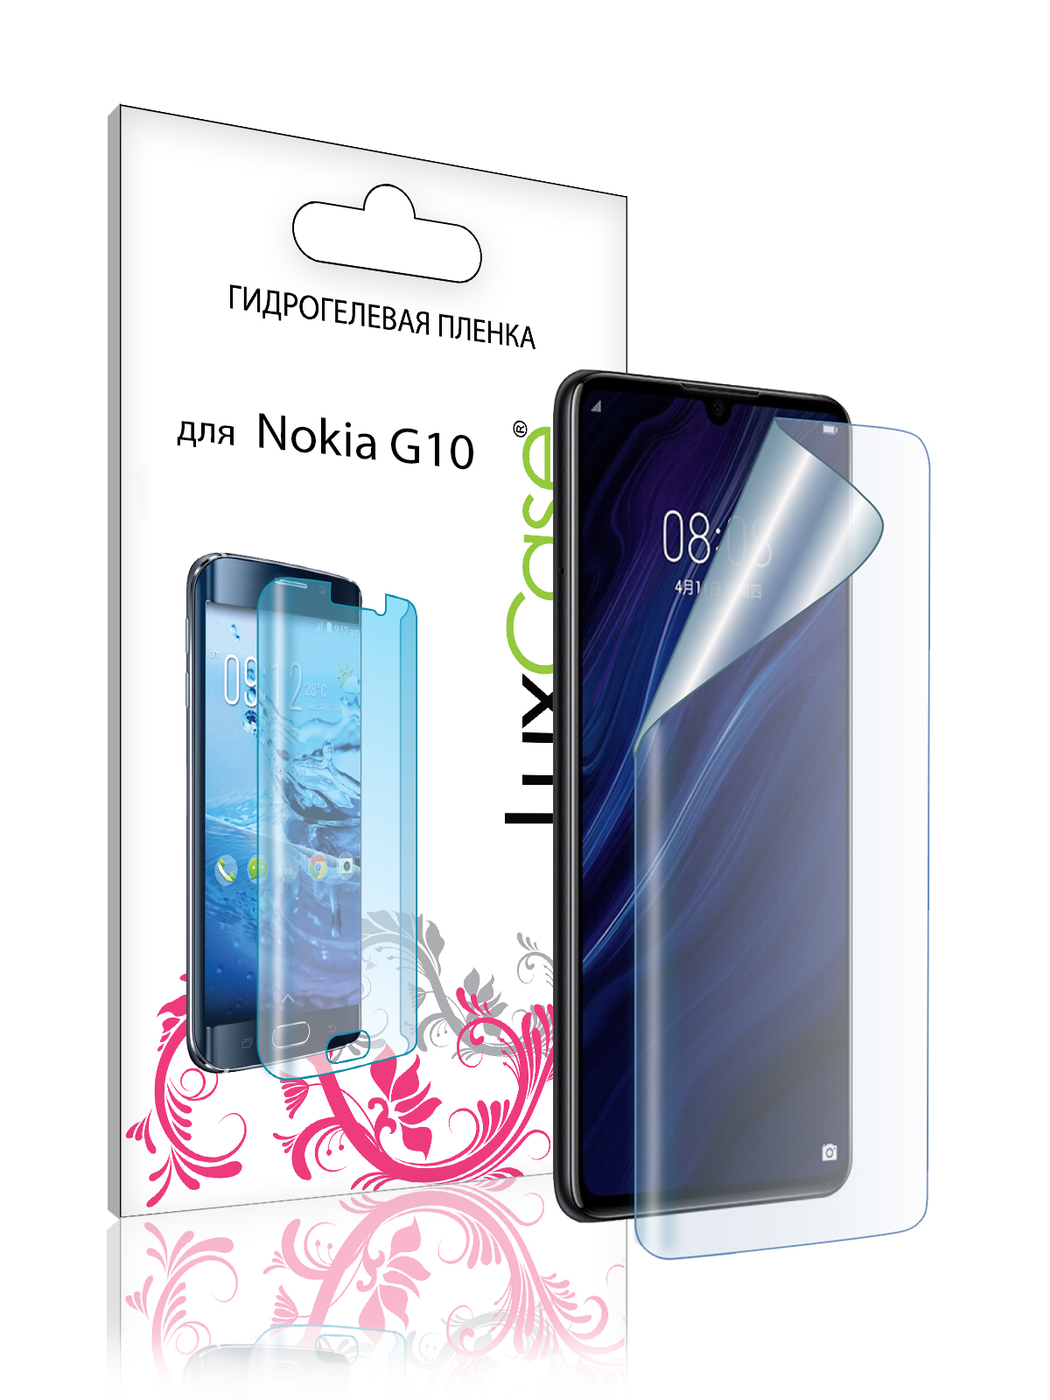 Гидрогелевая пленка LuxCase для Nokia G10 Front Transparent 86389 гидрогелевая пленка luxcase для nokia g10 back transparent 86390